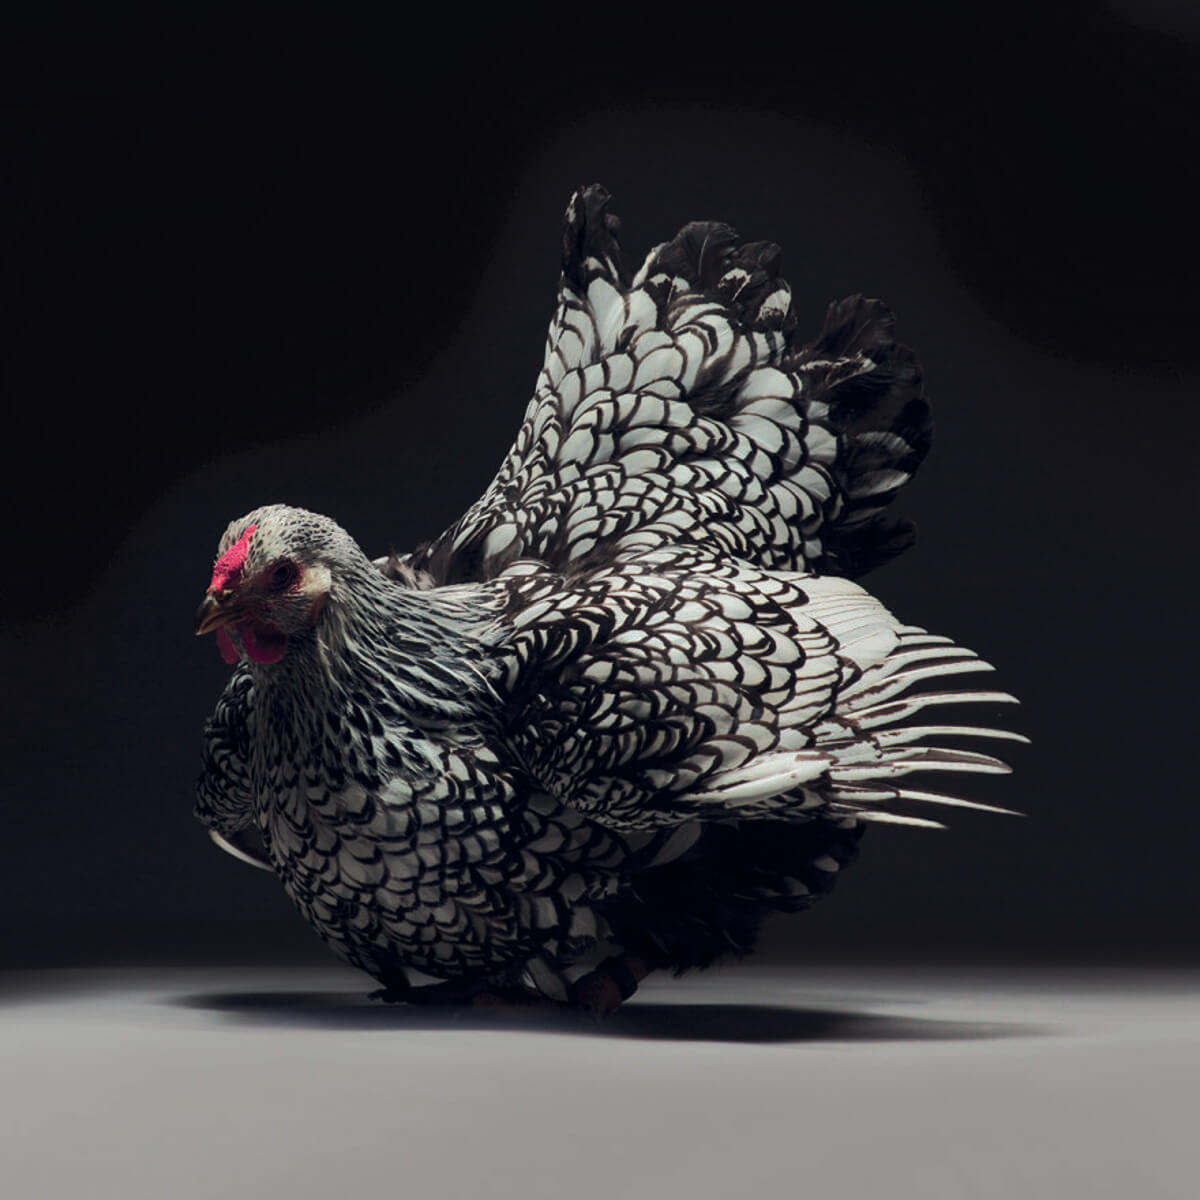 chicken portraits moreno monti matteo tranchellini 6 (1)